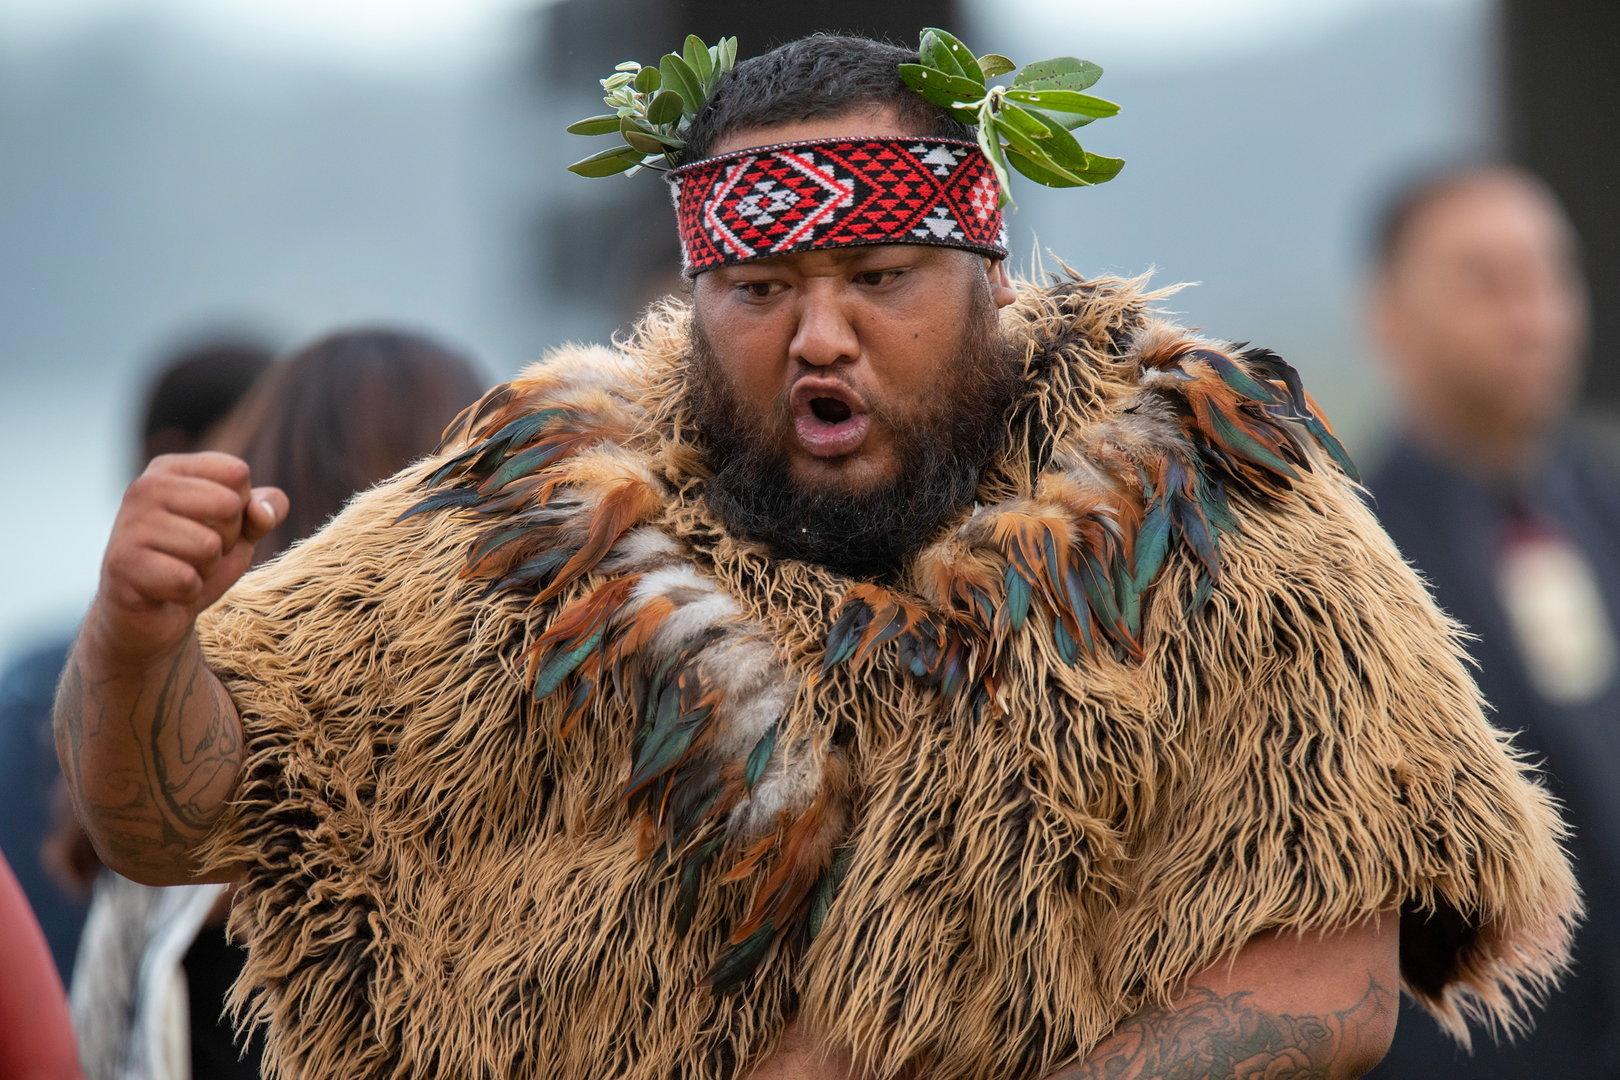 Leicht wie Schamhaar: Wirbel um Bier bei Ureinwohnern in Neuseeland